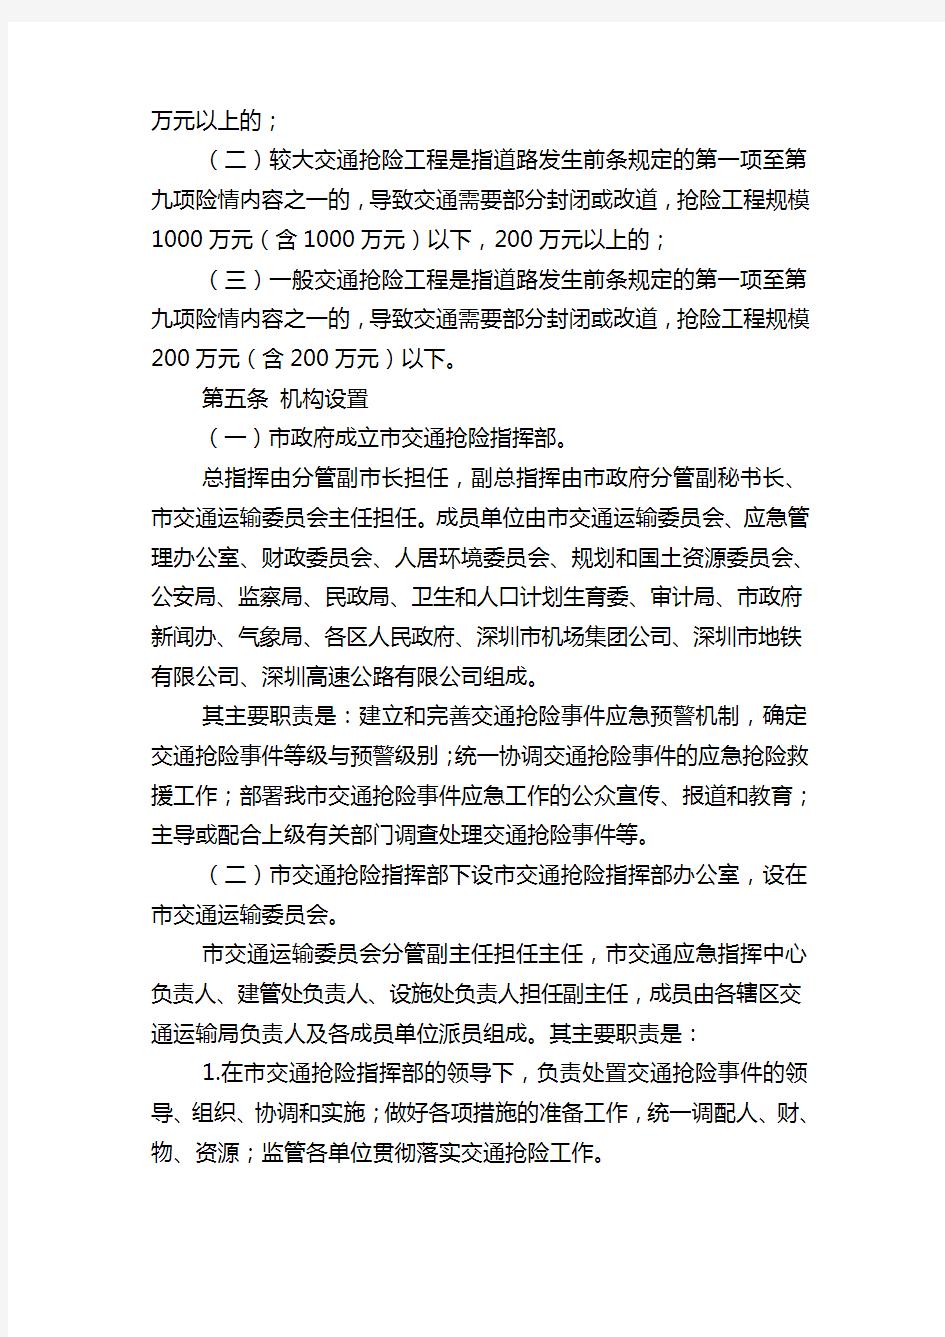 深圳市交通抢险工程管理办法和交通抢险工程管理办法实施细则